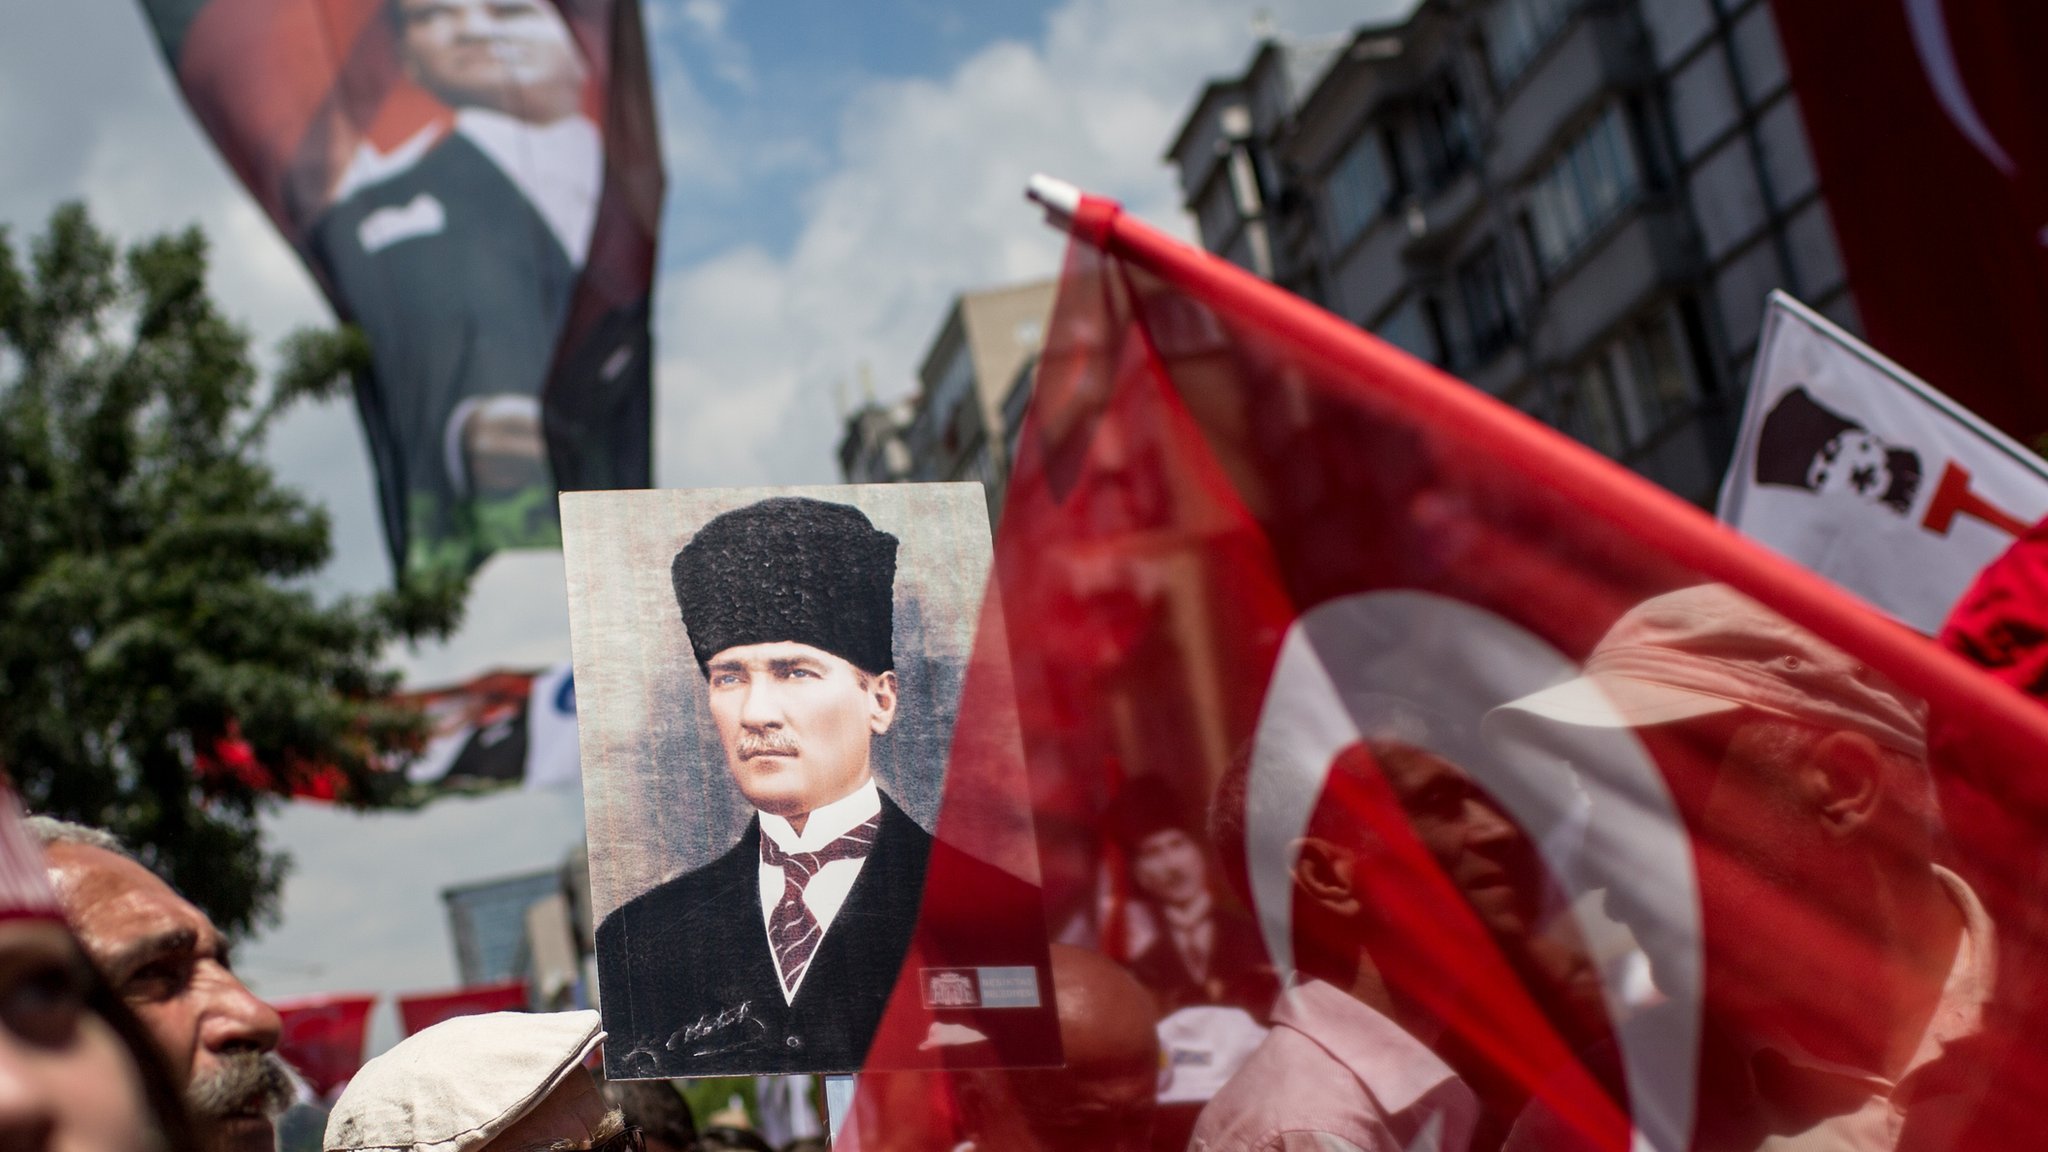 كمال أتاتورك: "أبو الأتراك" الذي تحيي تركيا ذكراه - BBC News عربي